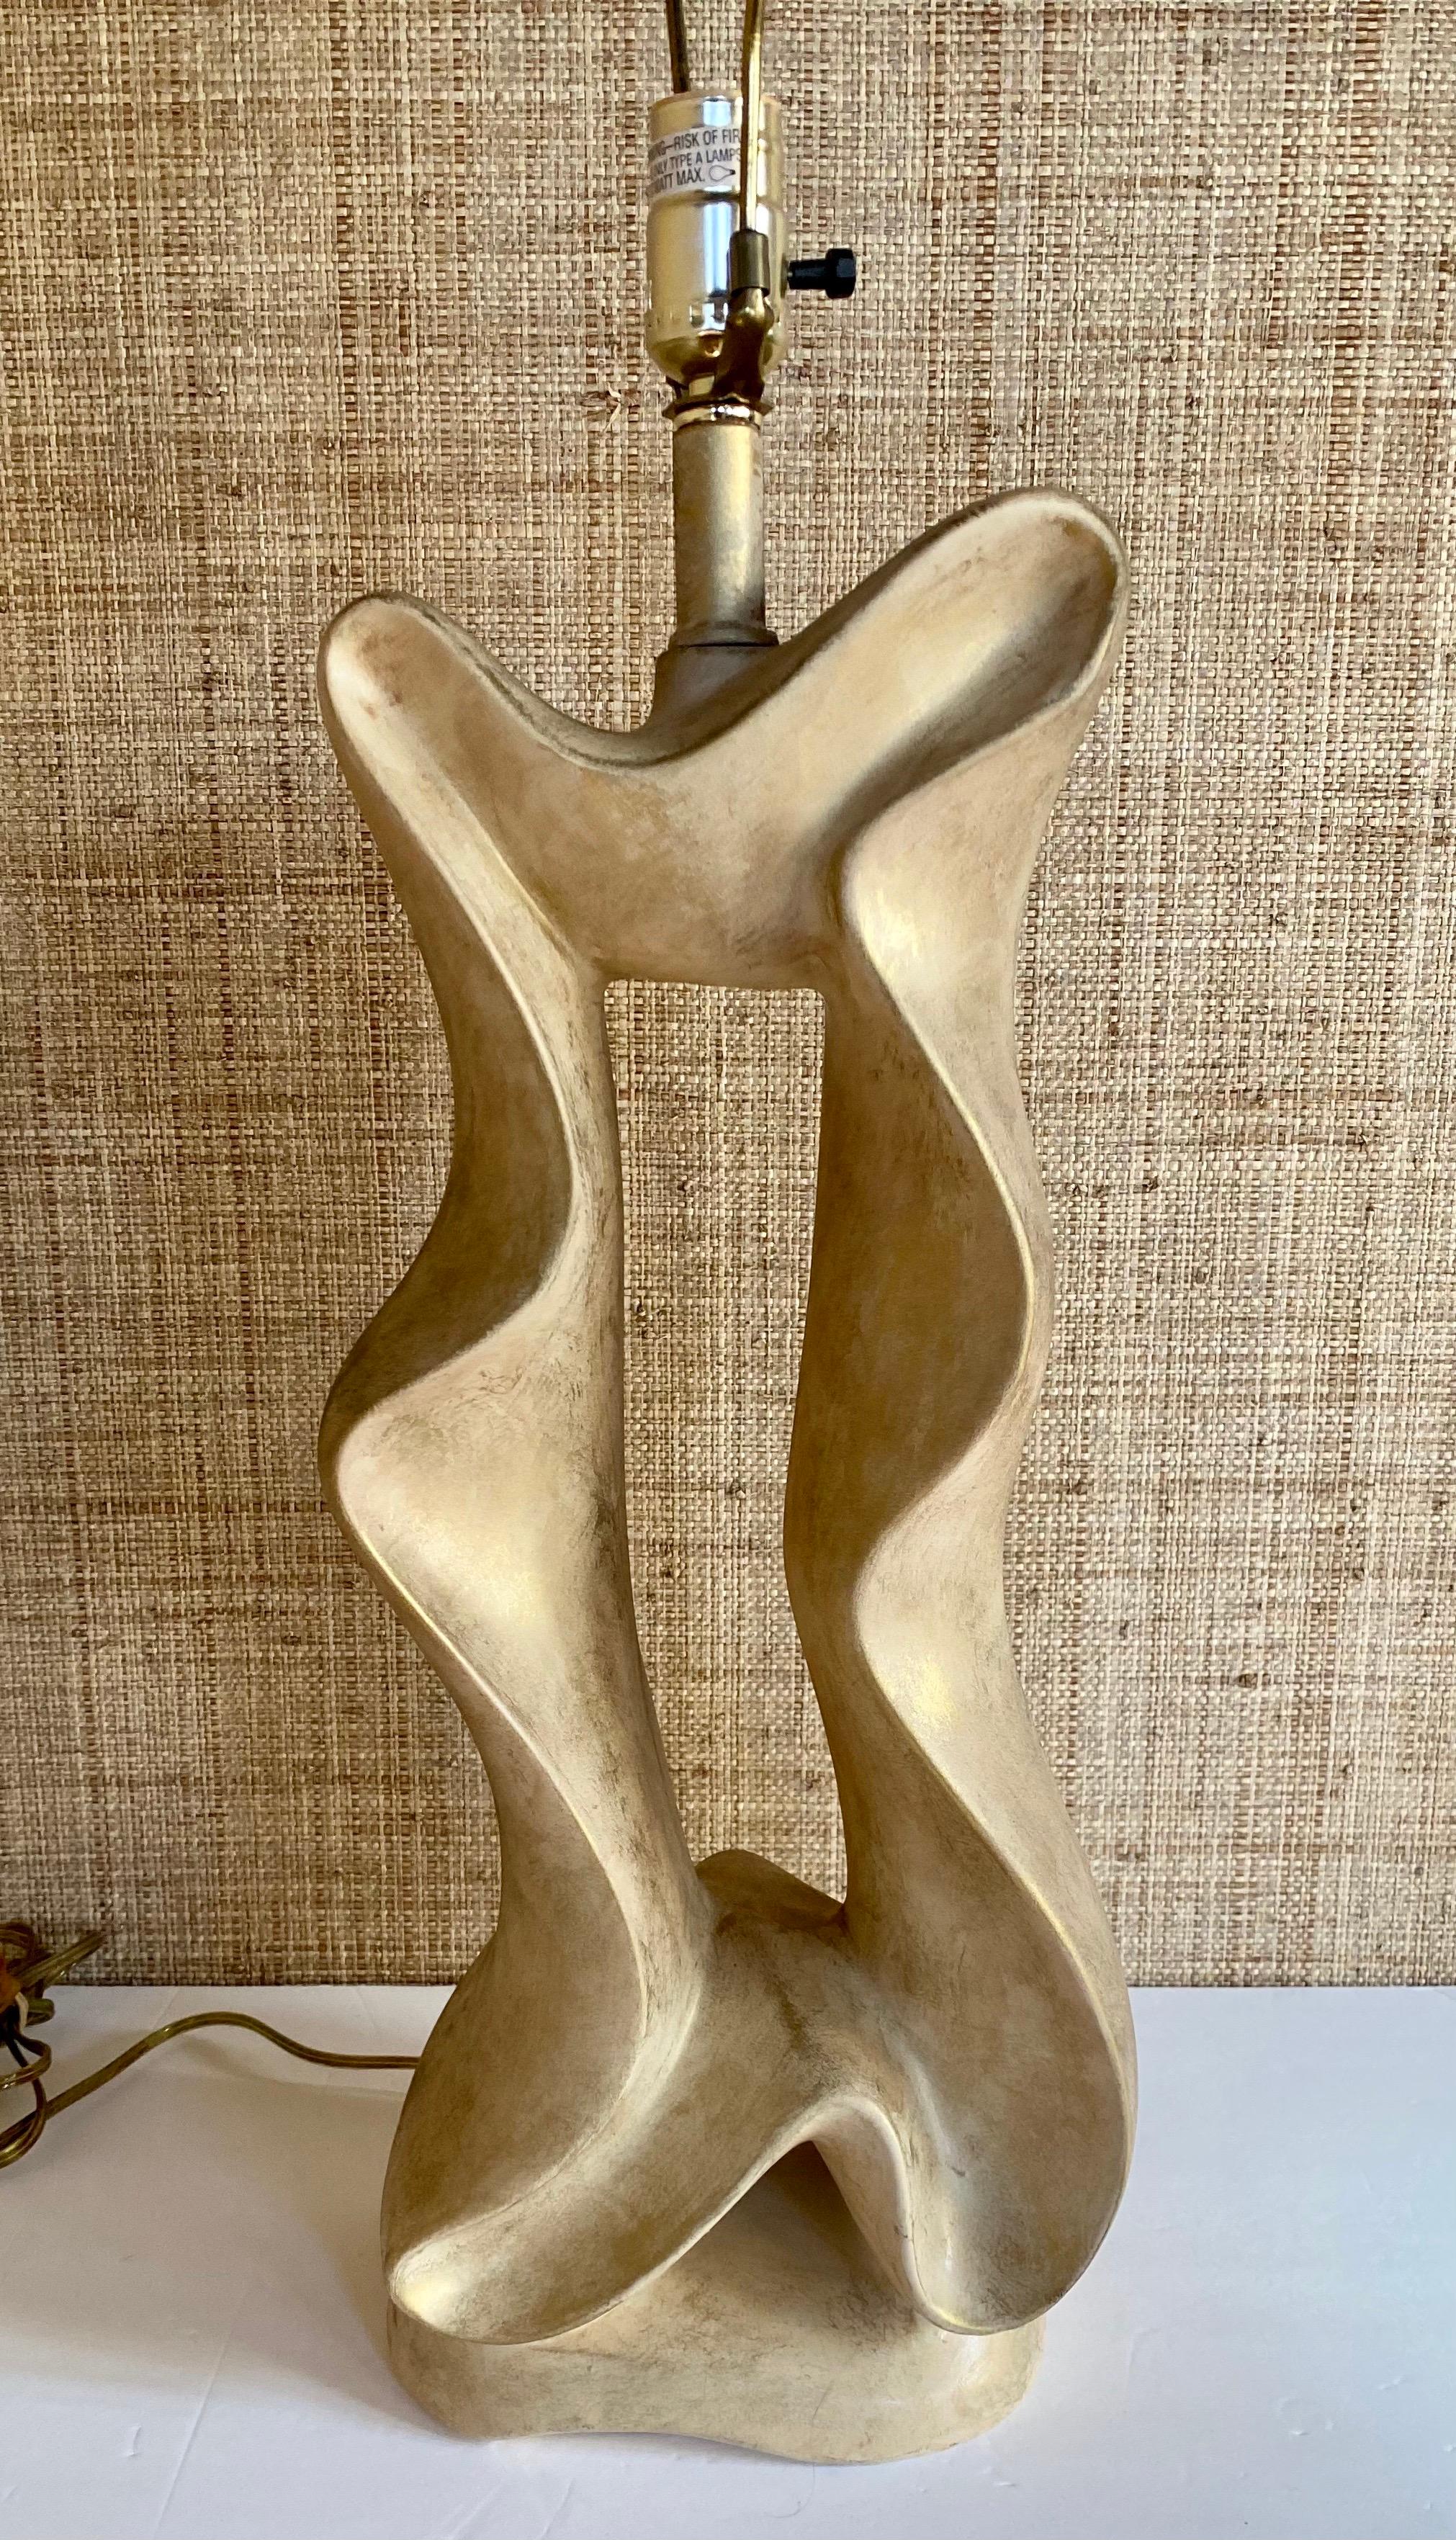 Lampe de table biomorphique post-moderne très unique de Jaru. Cette lampe sculpturale de forme abstraite présente une finition de ton neutre avec des accents métalliques dorés. Circa années 80. Abat-jour non inclus. 

Mesures : Hauteur jusqu'à